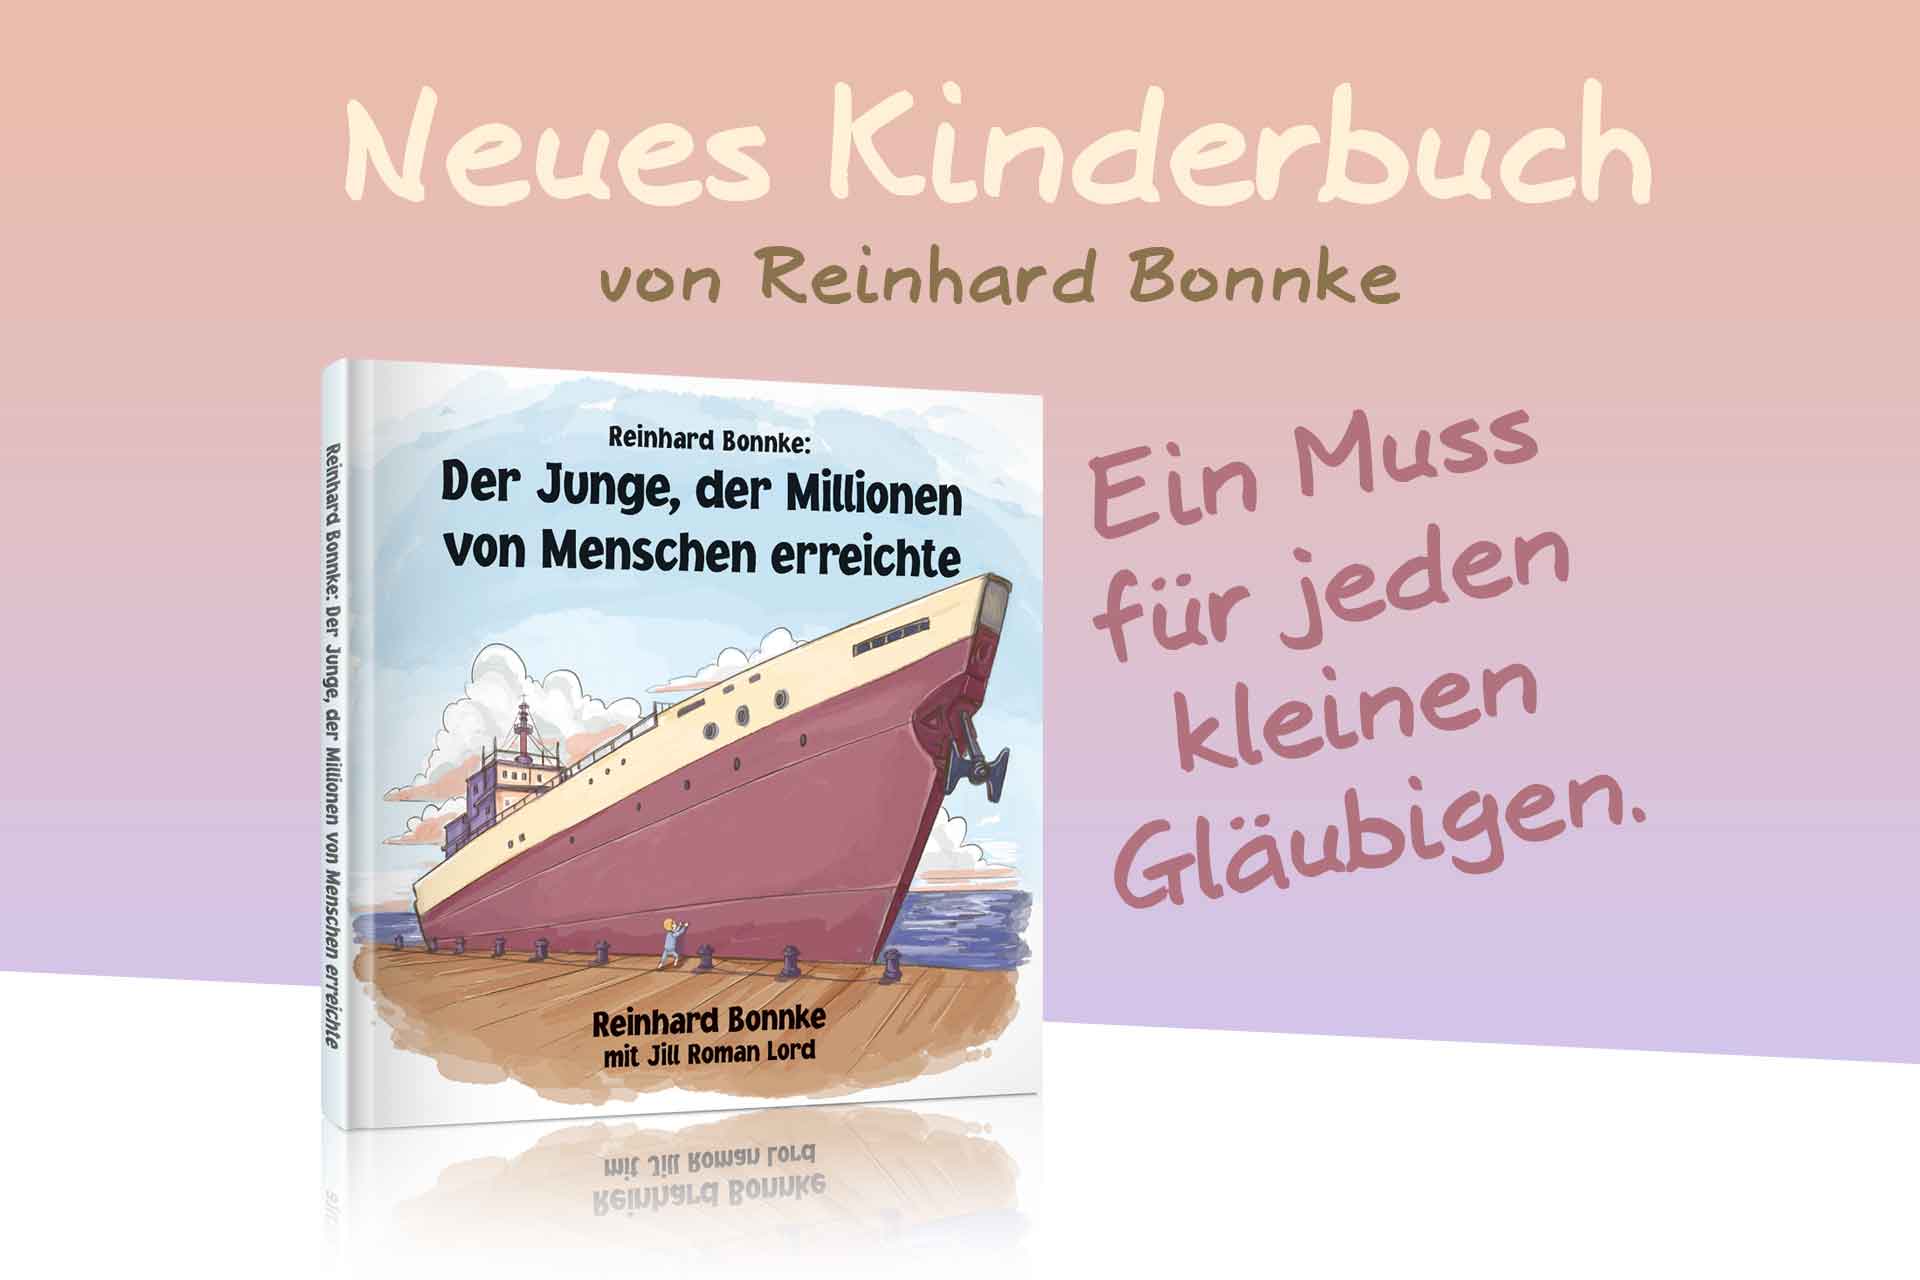 Neues Kinderbuch von Reinhard Bonnke: „Der Junge, der Millionen von Menschen erreichte“. Ein Muss für jeden kleinen Gläubigen.